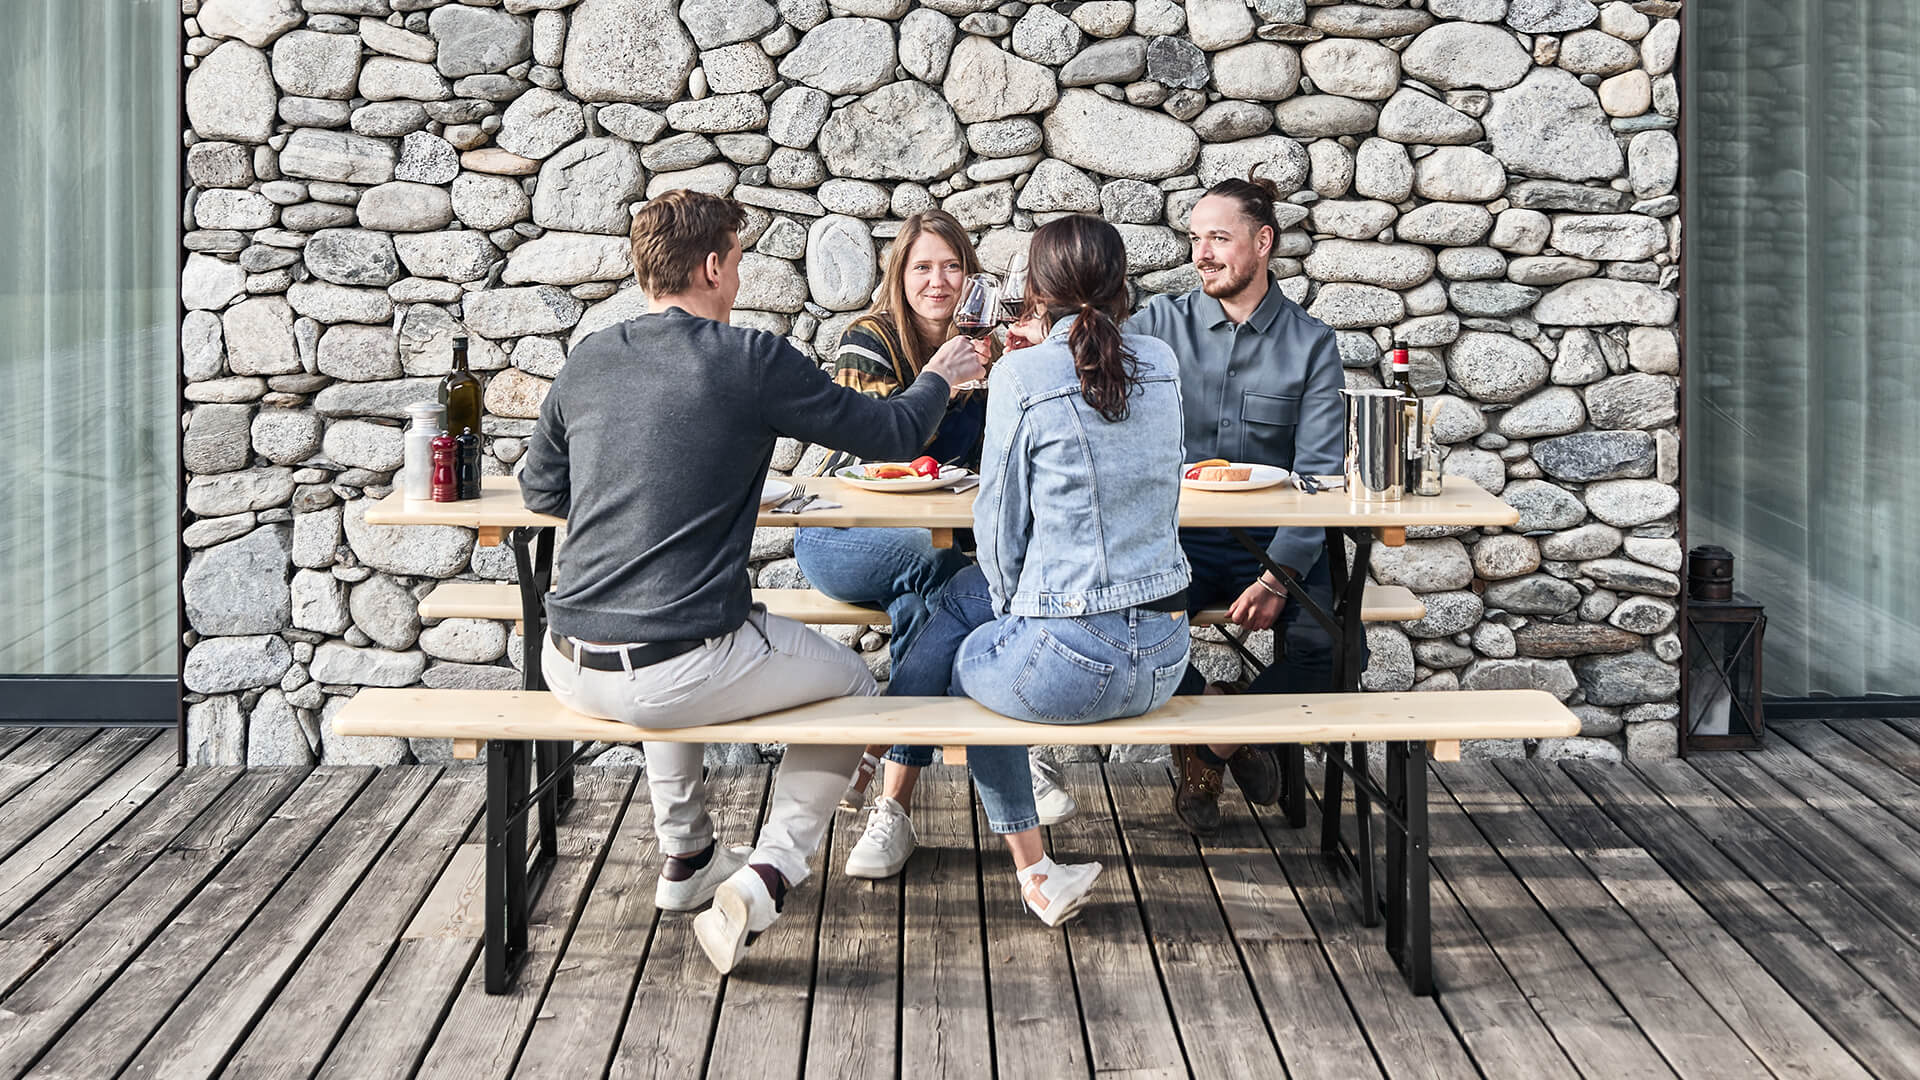 Auf einer Terrasse genießen 4 Personen Ihre Mahlzeit gemütlich auf der klassischen Bierzeltgarnitur in Natur